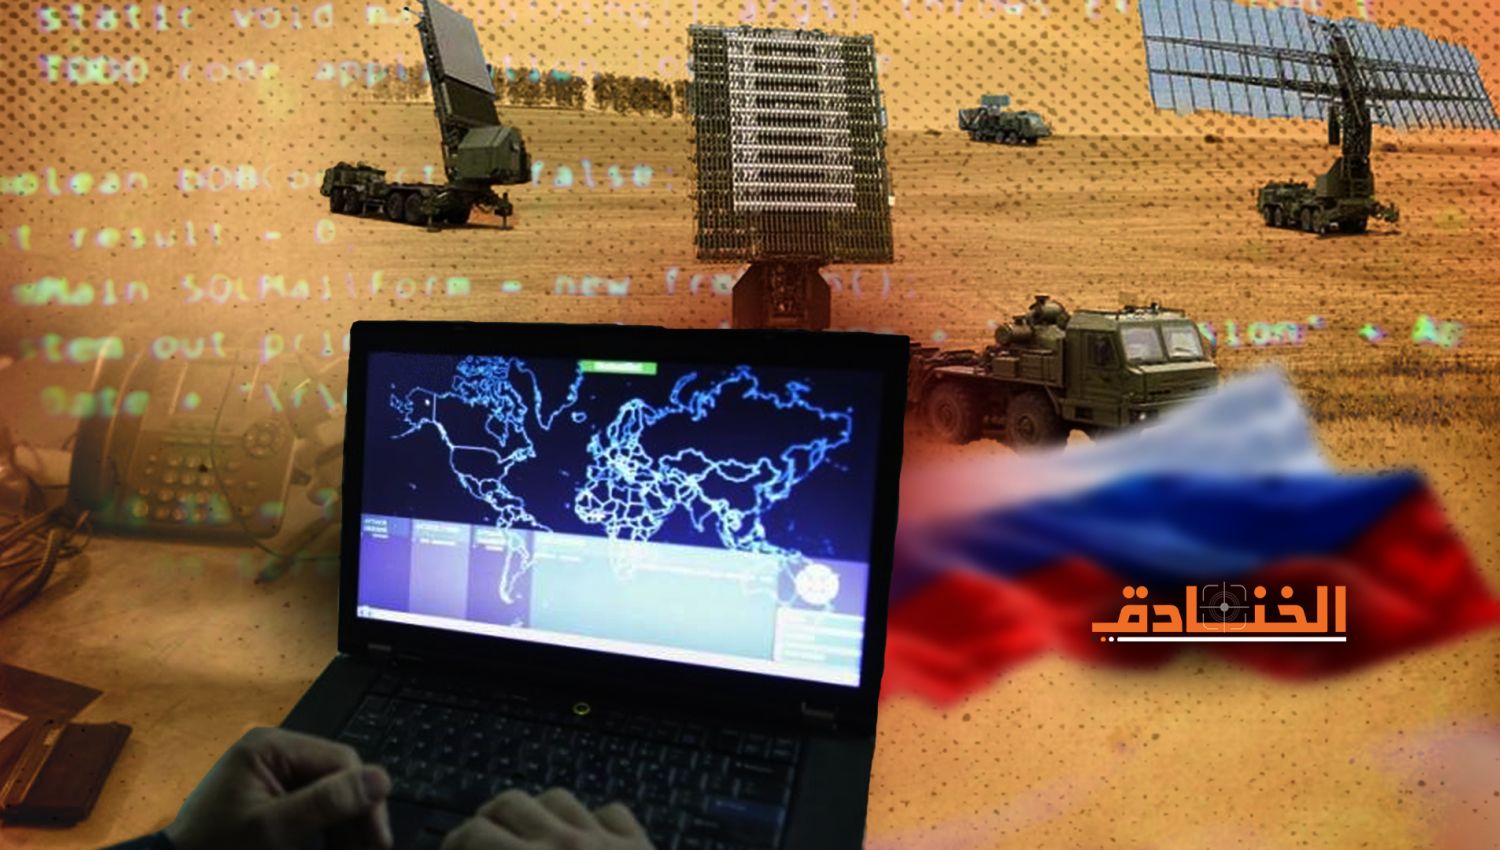 بالتوازي مع العملية الروسية العسكرية: حرب الكترونية وسيبرانية كبرى 